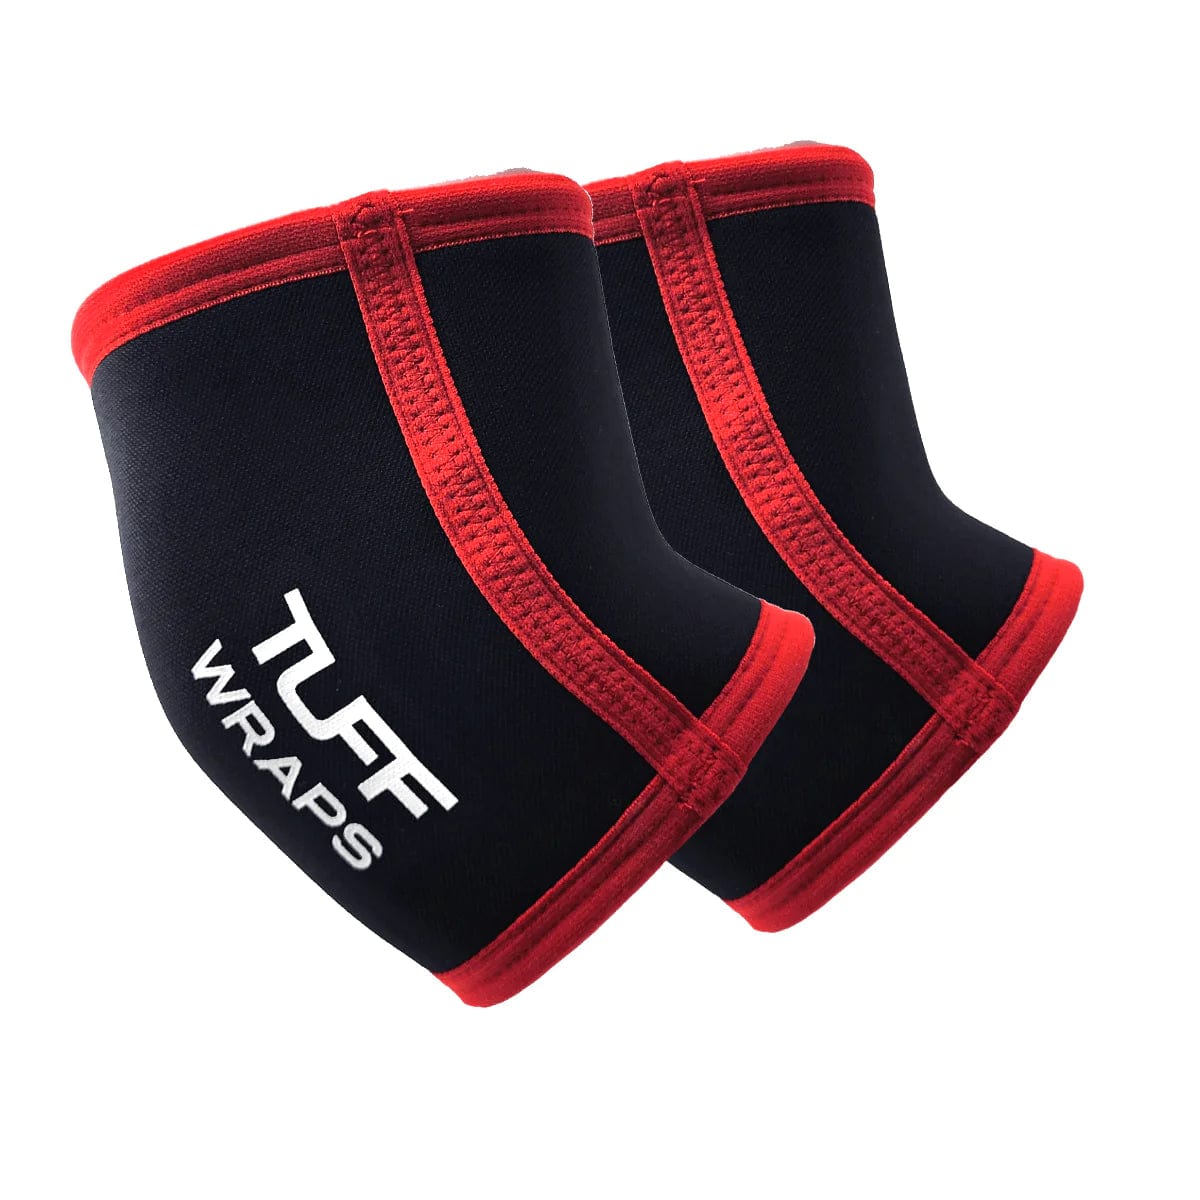 TUFF Elbow Sleeves 5mm (Black/Red) Elbow Sleeves